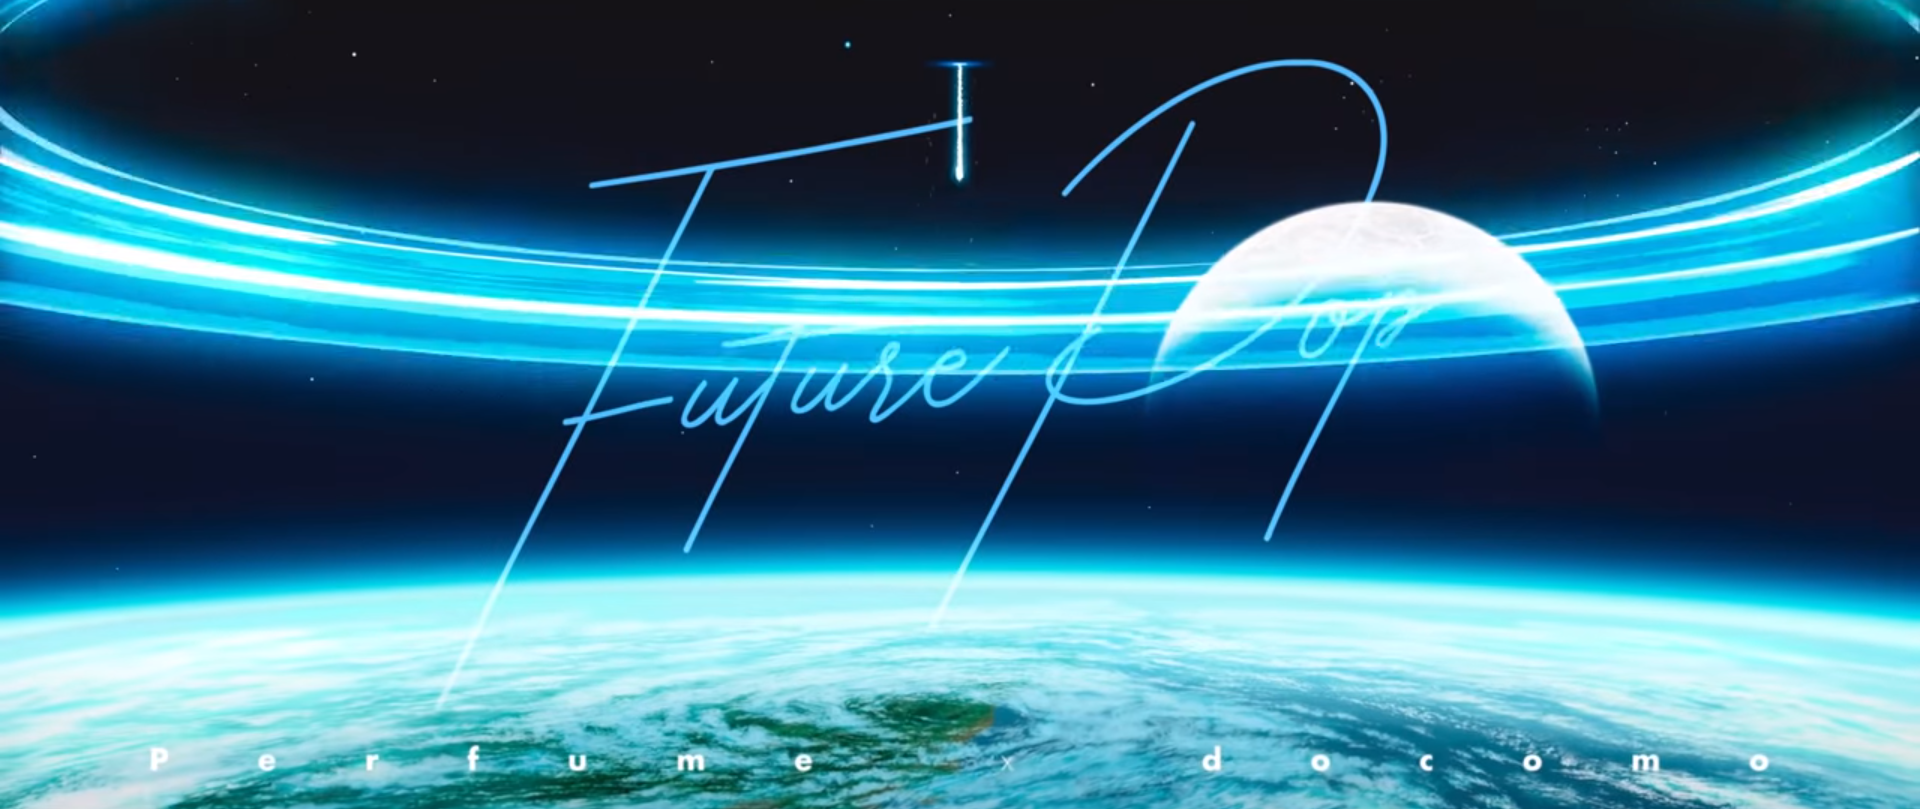 Музыкальное видео Future Pop от группы Perfume